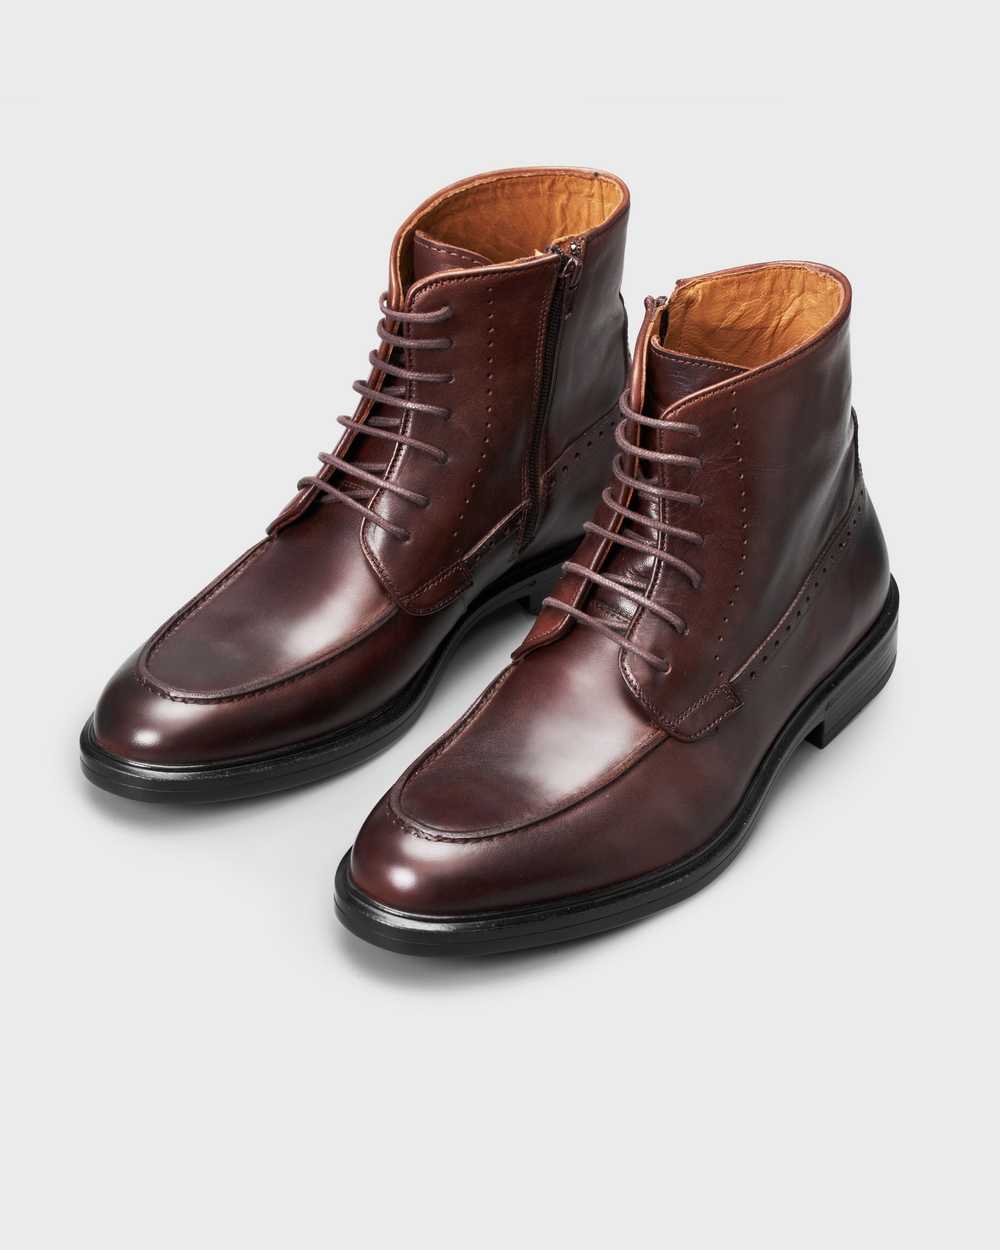 Ботинки мужские коричневые на шнурках и замке с полукруговым декоративным швом (moc toe)